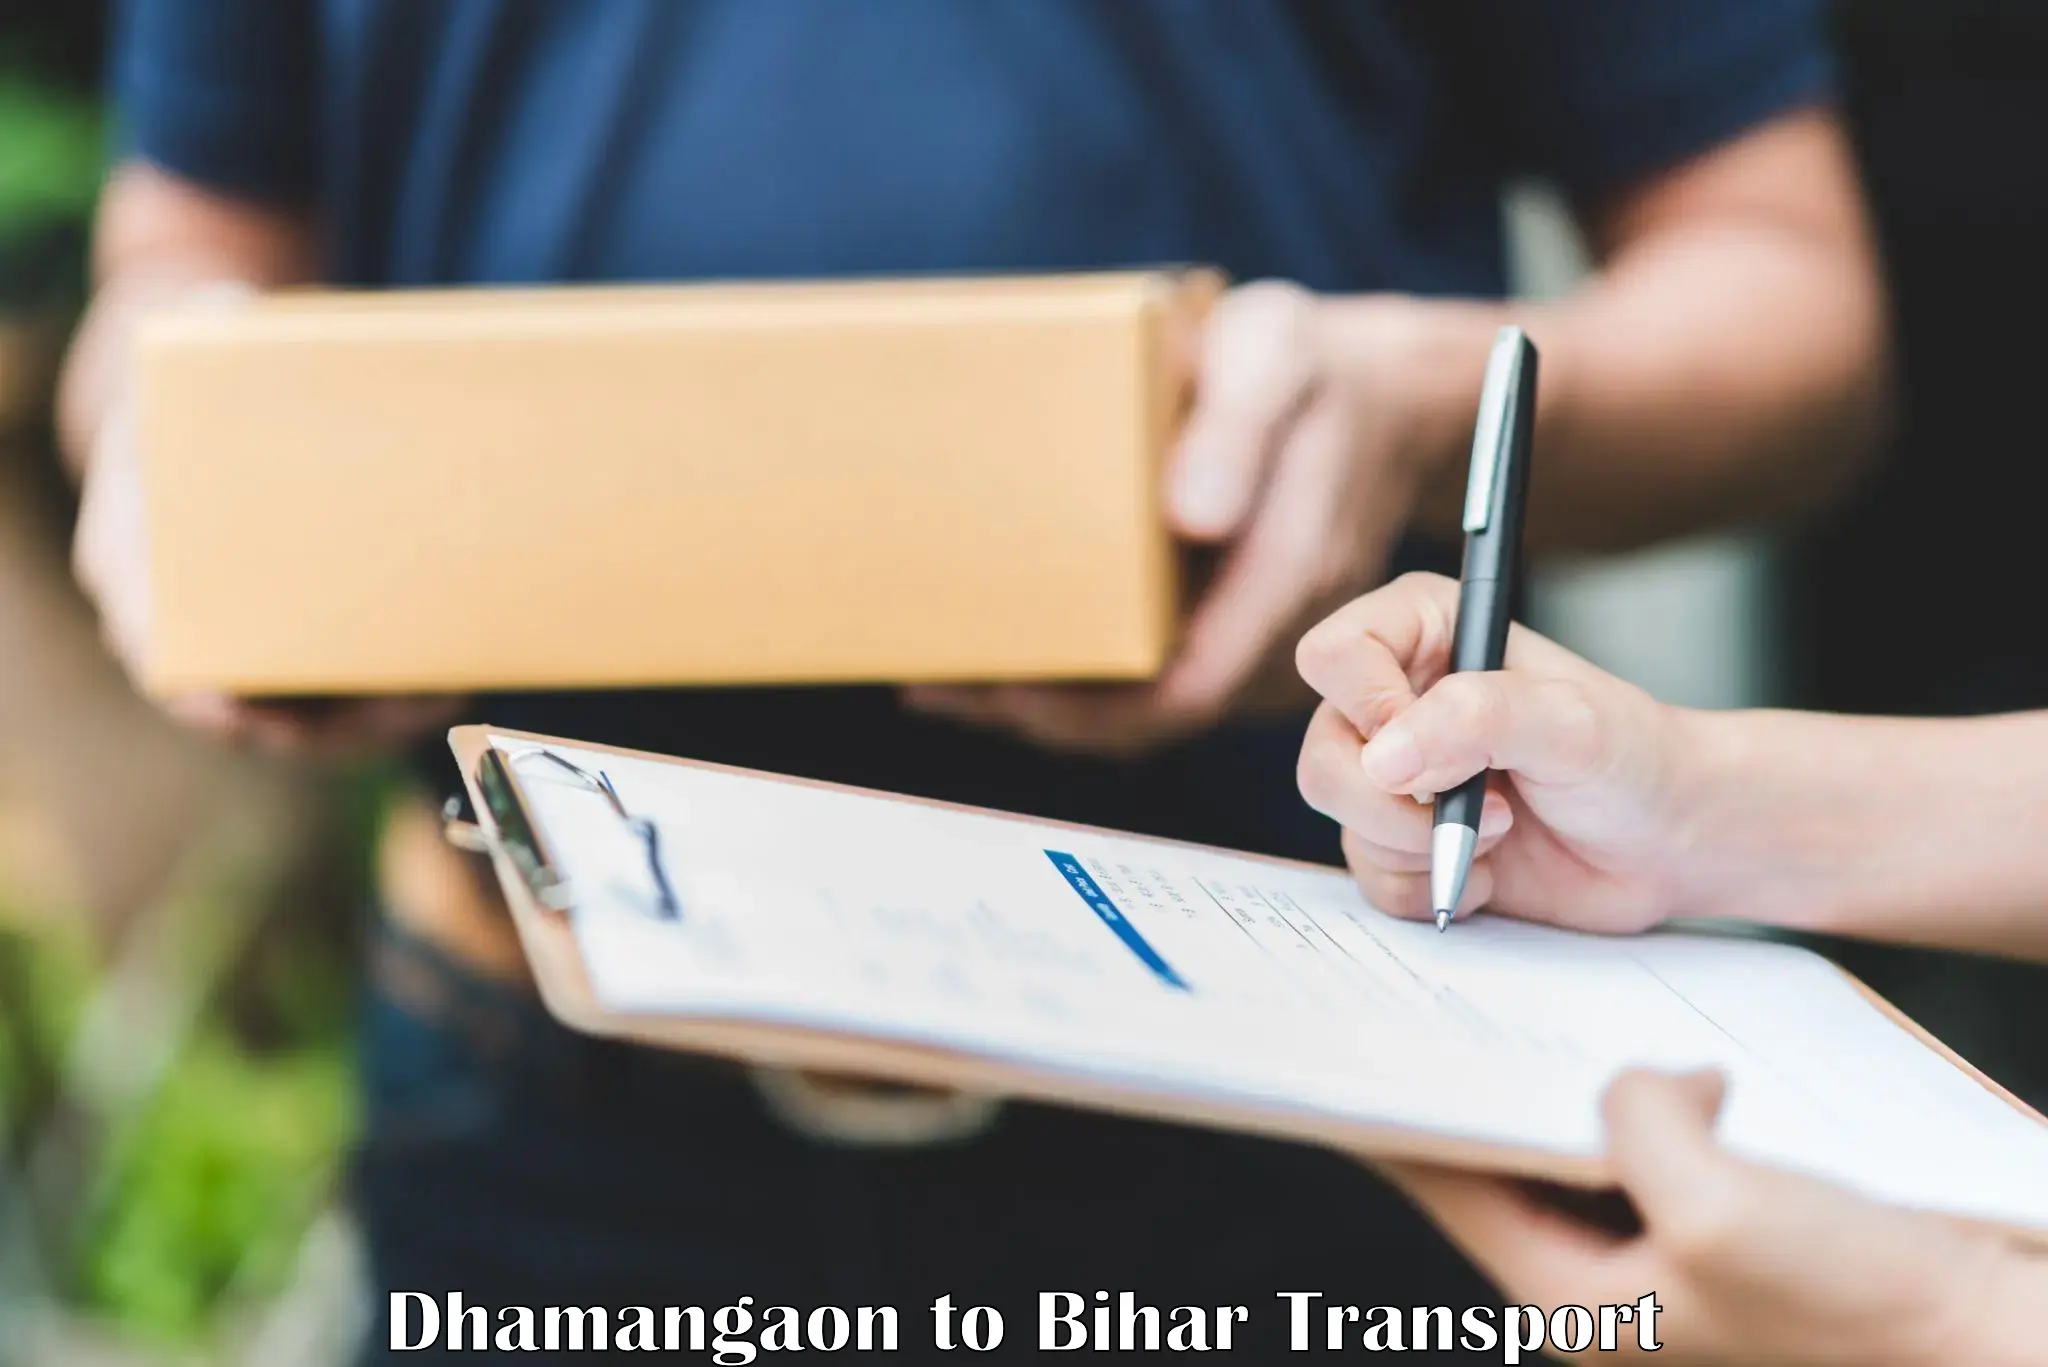 Online transport service Dhamangaon to Dighwara